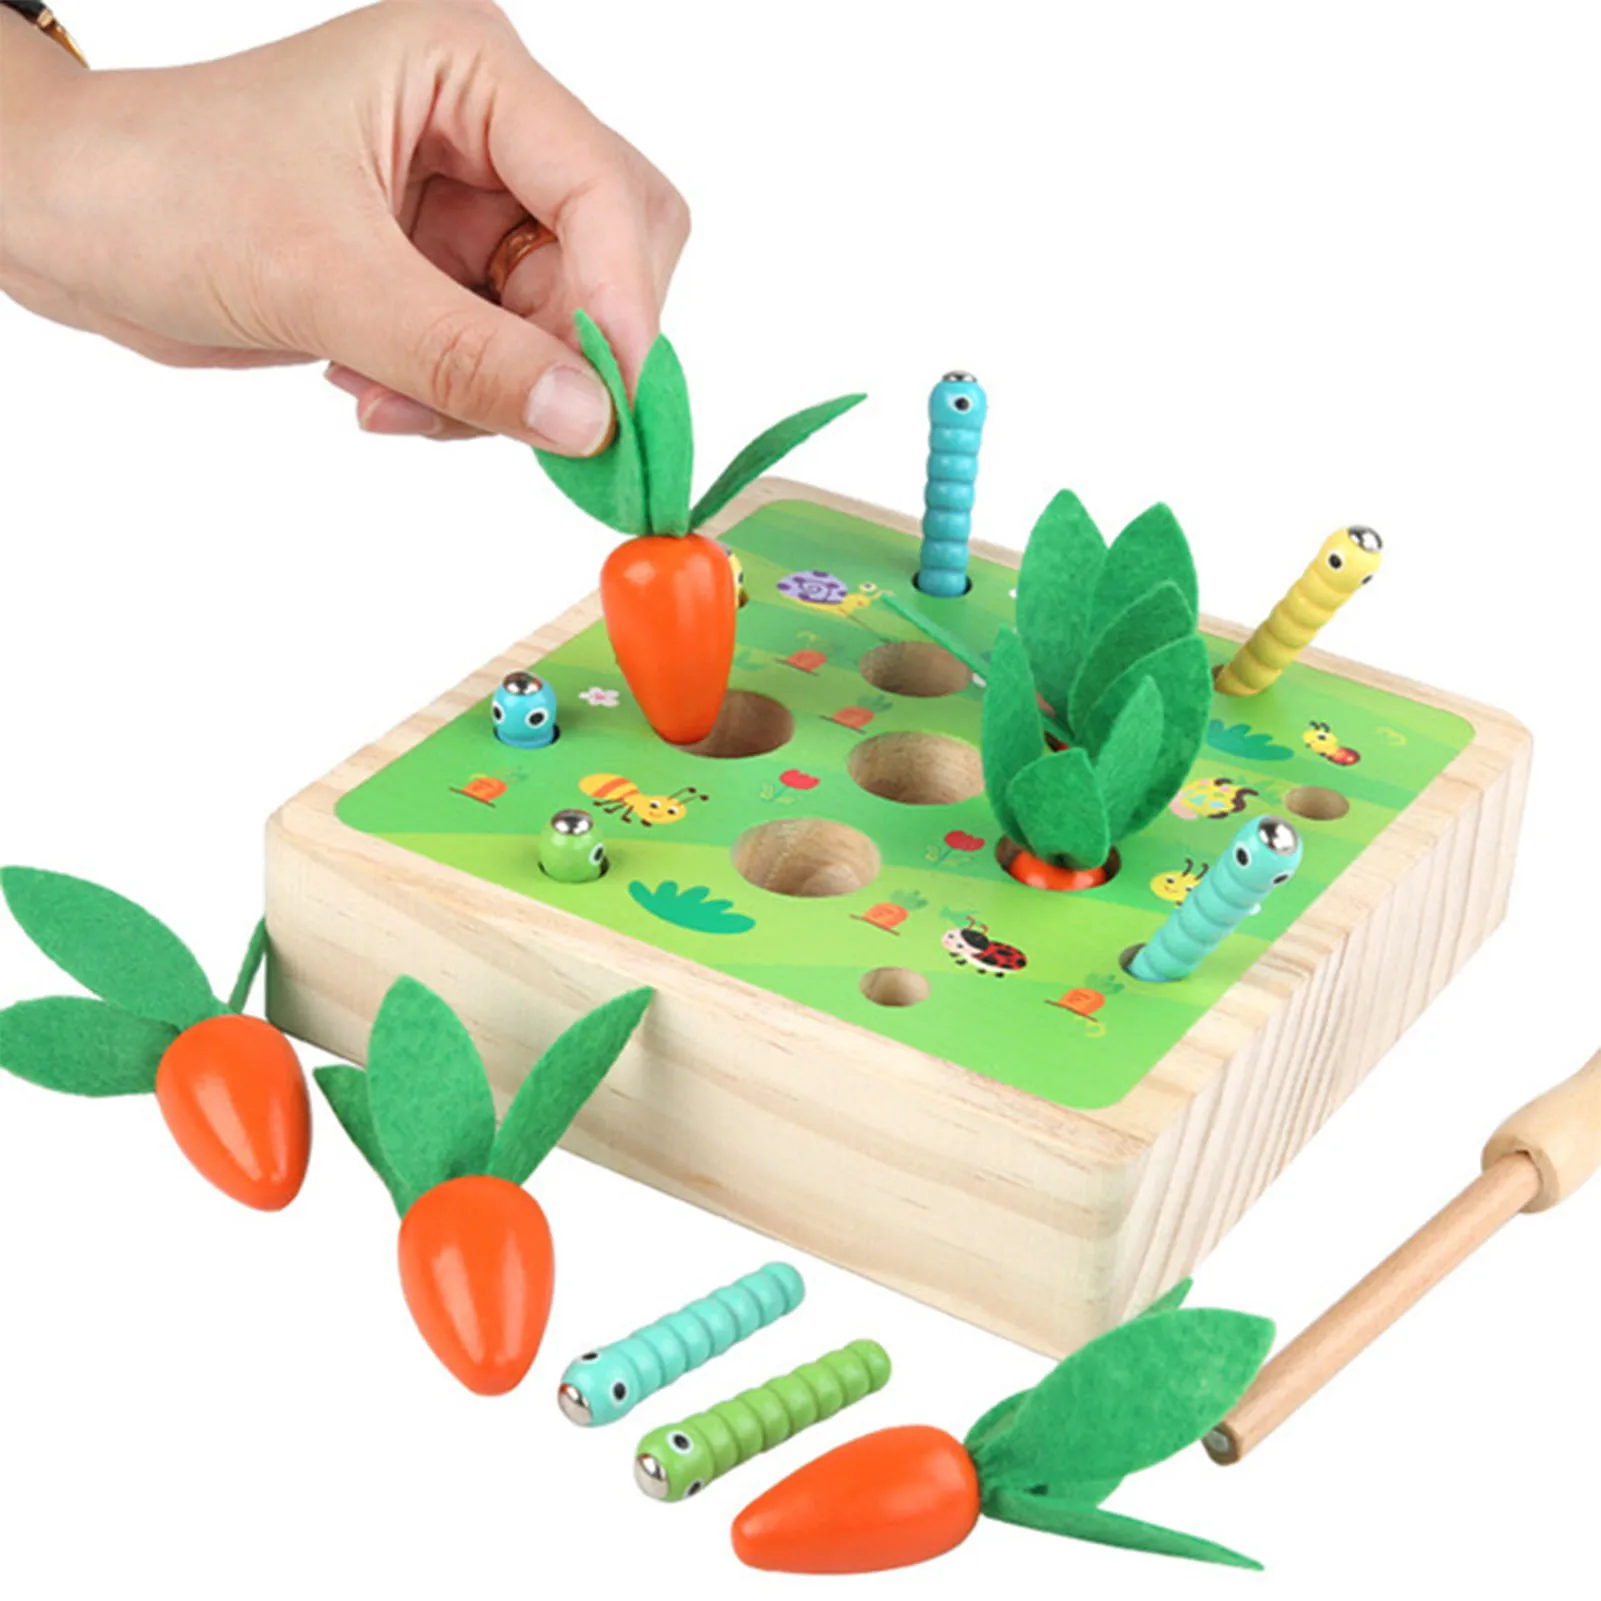 

Игрушка Монтессори, функция вытягивания моркови, альпинийская форма, совпадающий размер, познавательная интерактивная обучающая игрушка д...